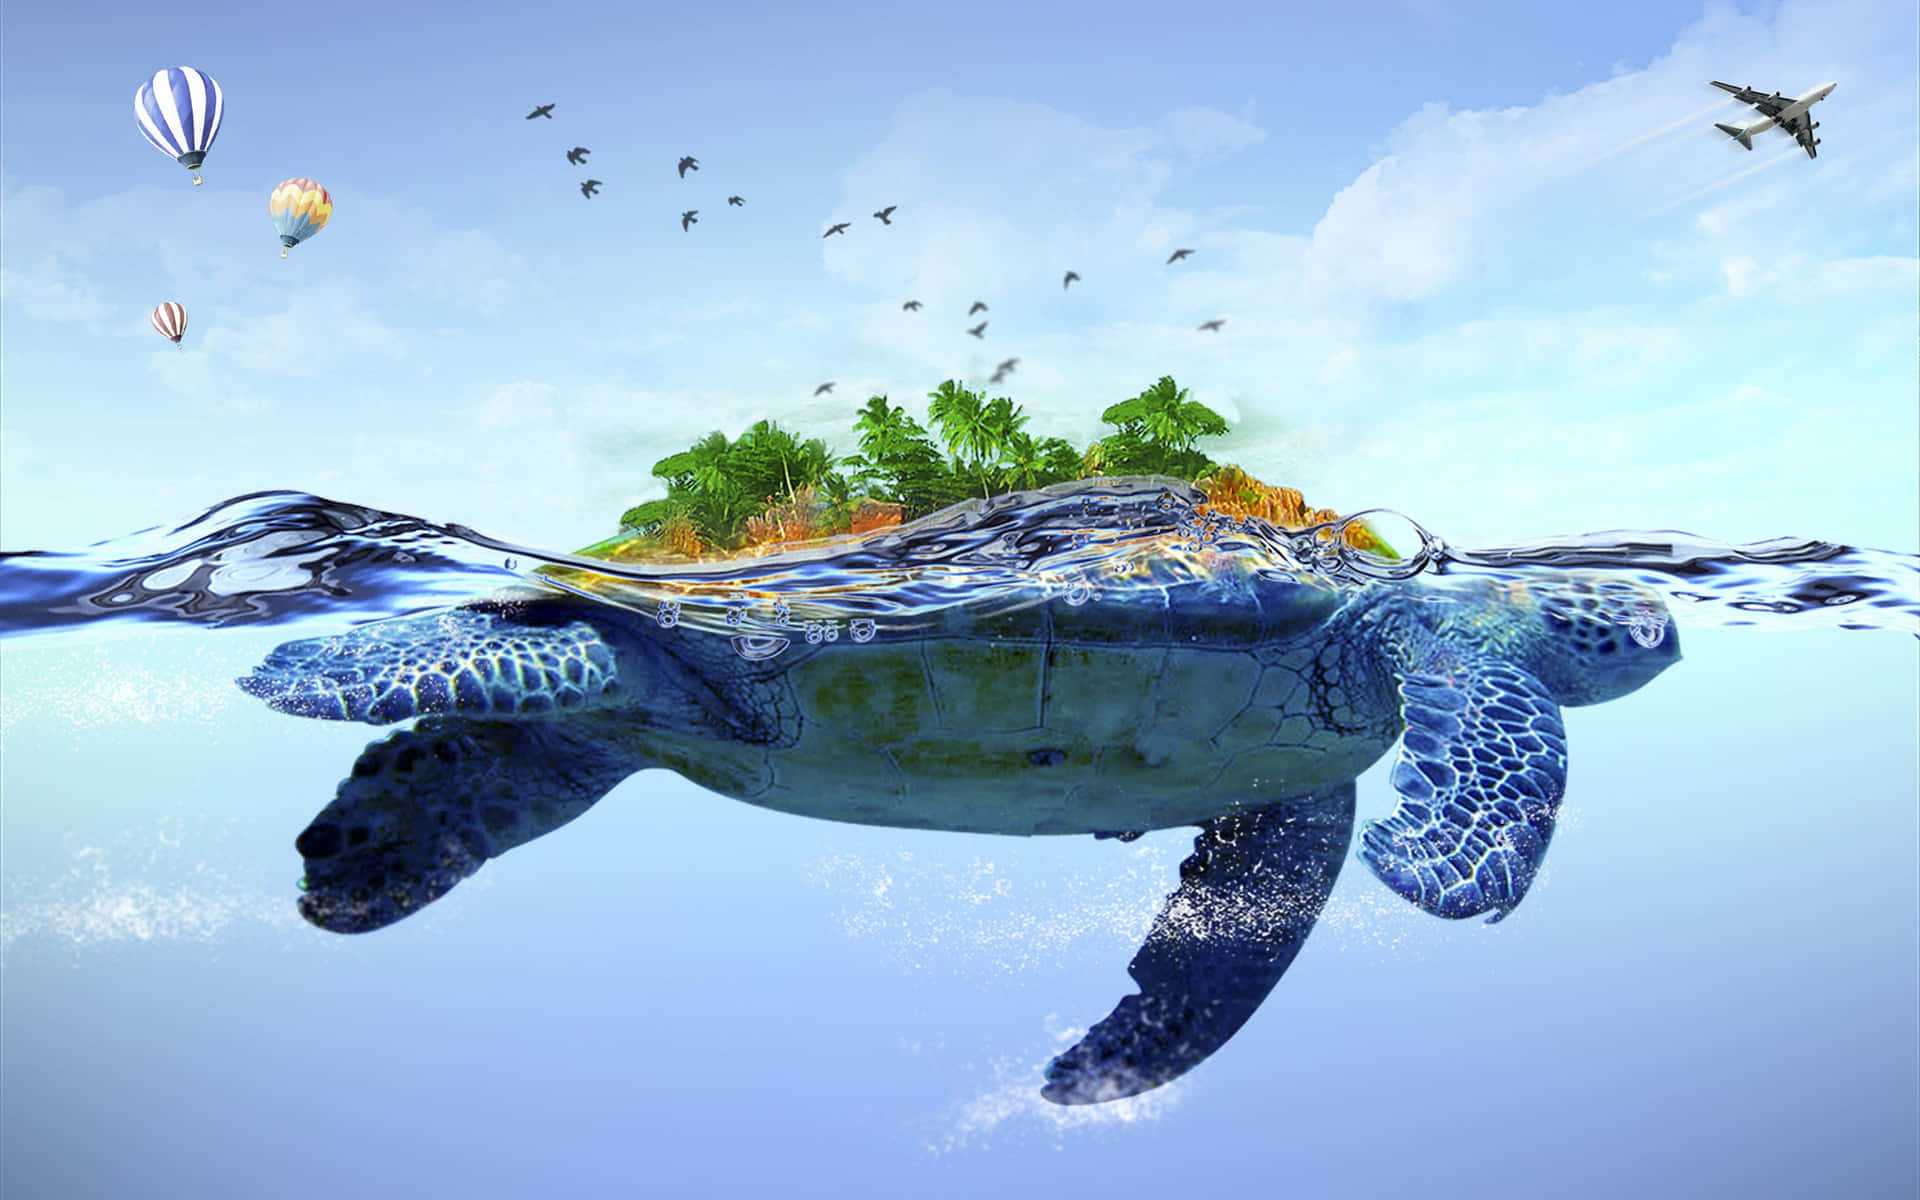 Ensköldpadda Som Simmar I Havet Med Ett Träd Och Ballonger